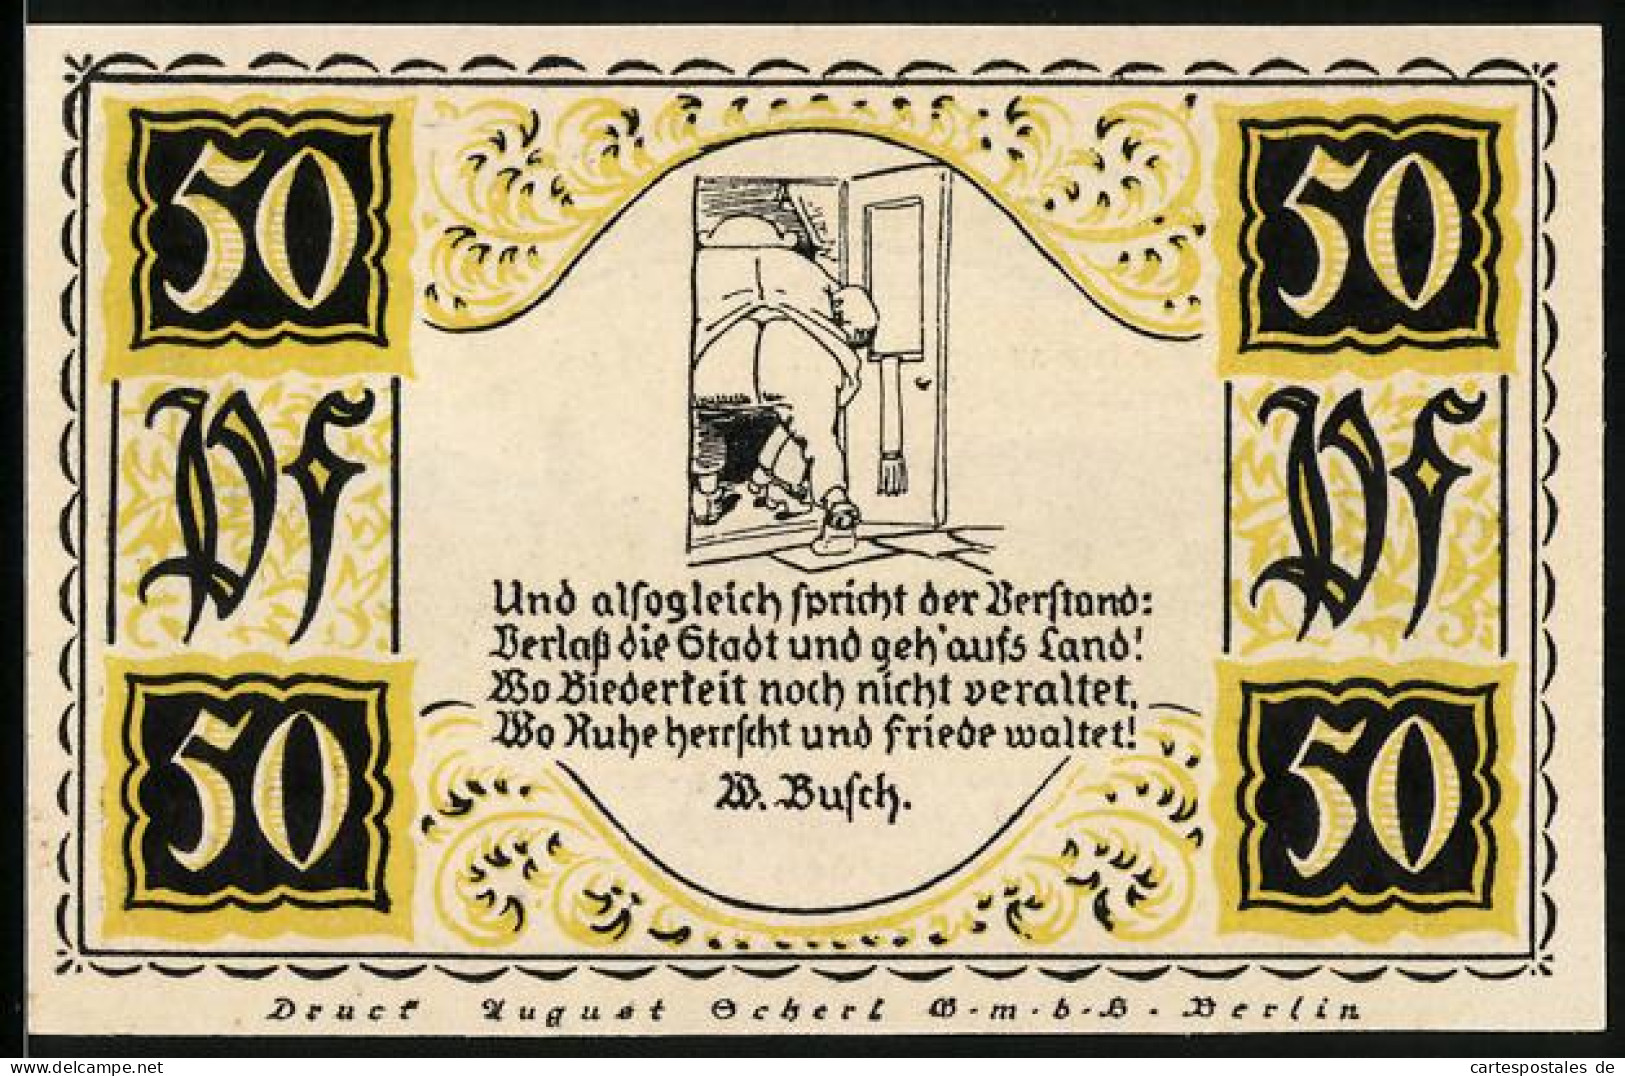 Notgeld Stolzenau 1921, 50 Pfennig, Gesamtansicht Von Bad Rehburg Und Der örtliche Kursaal  - [11] Local Banknote Issues